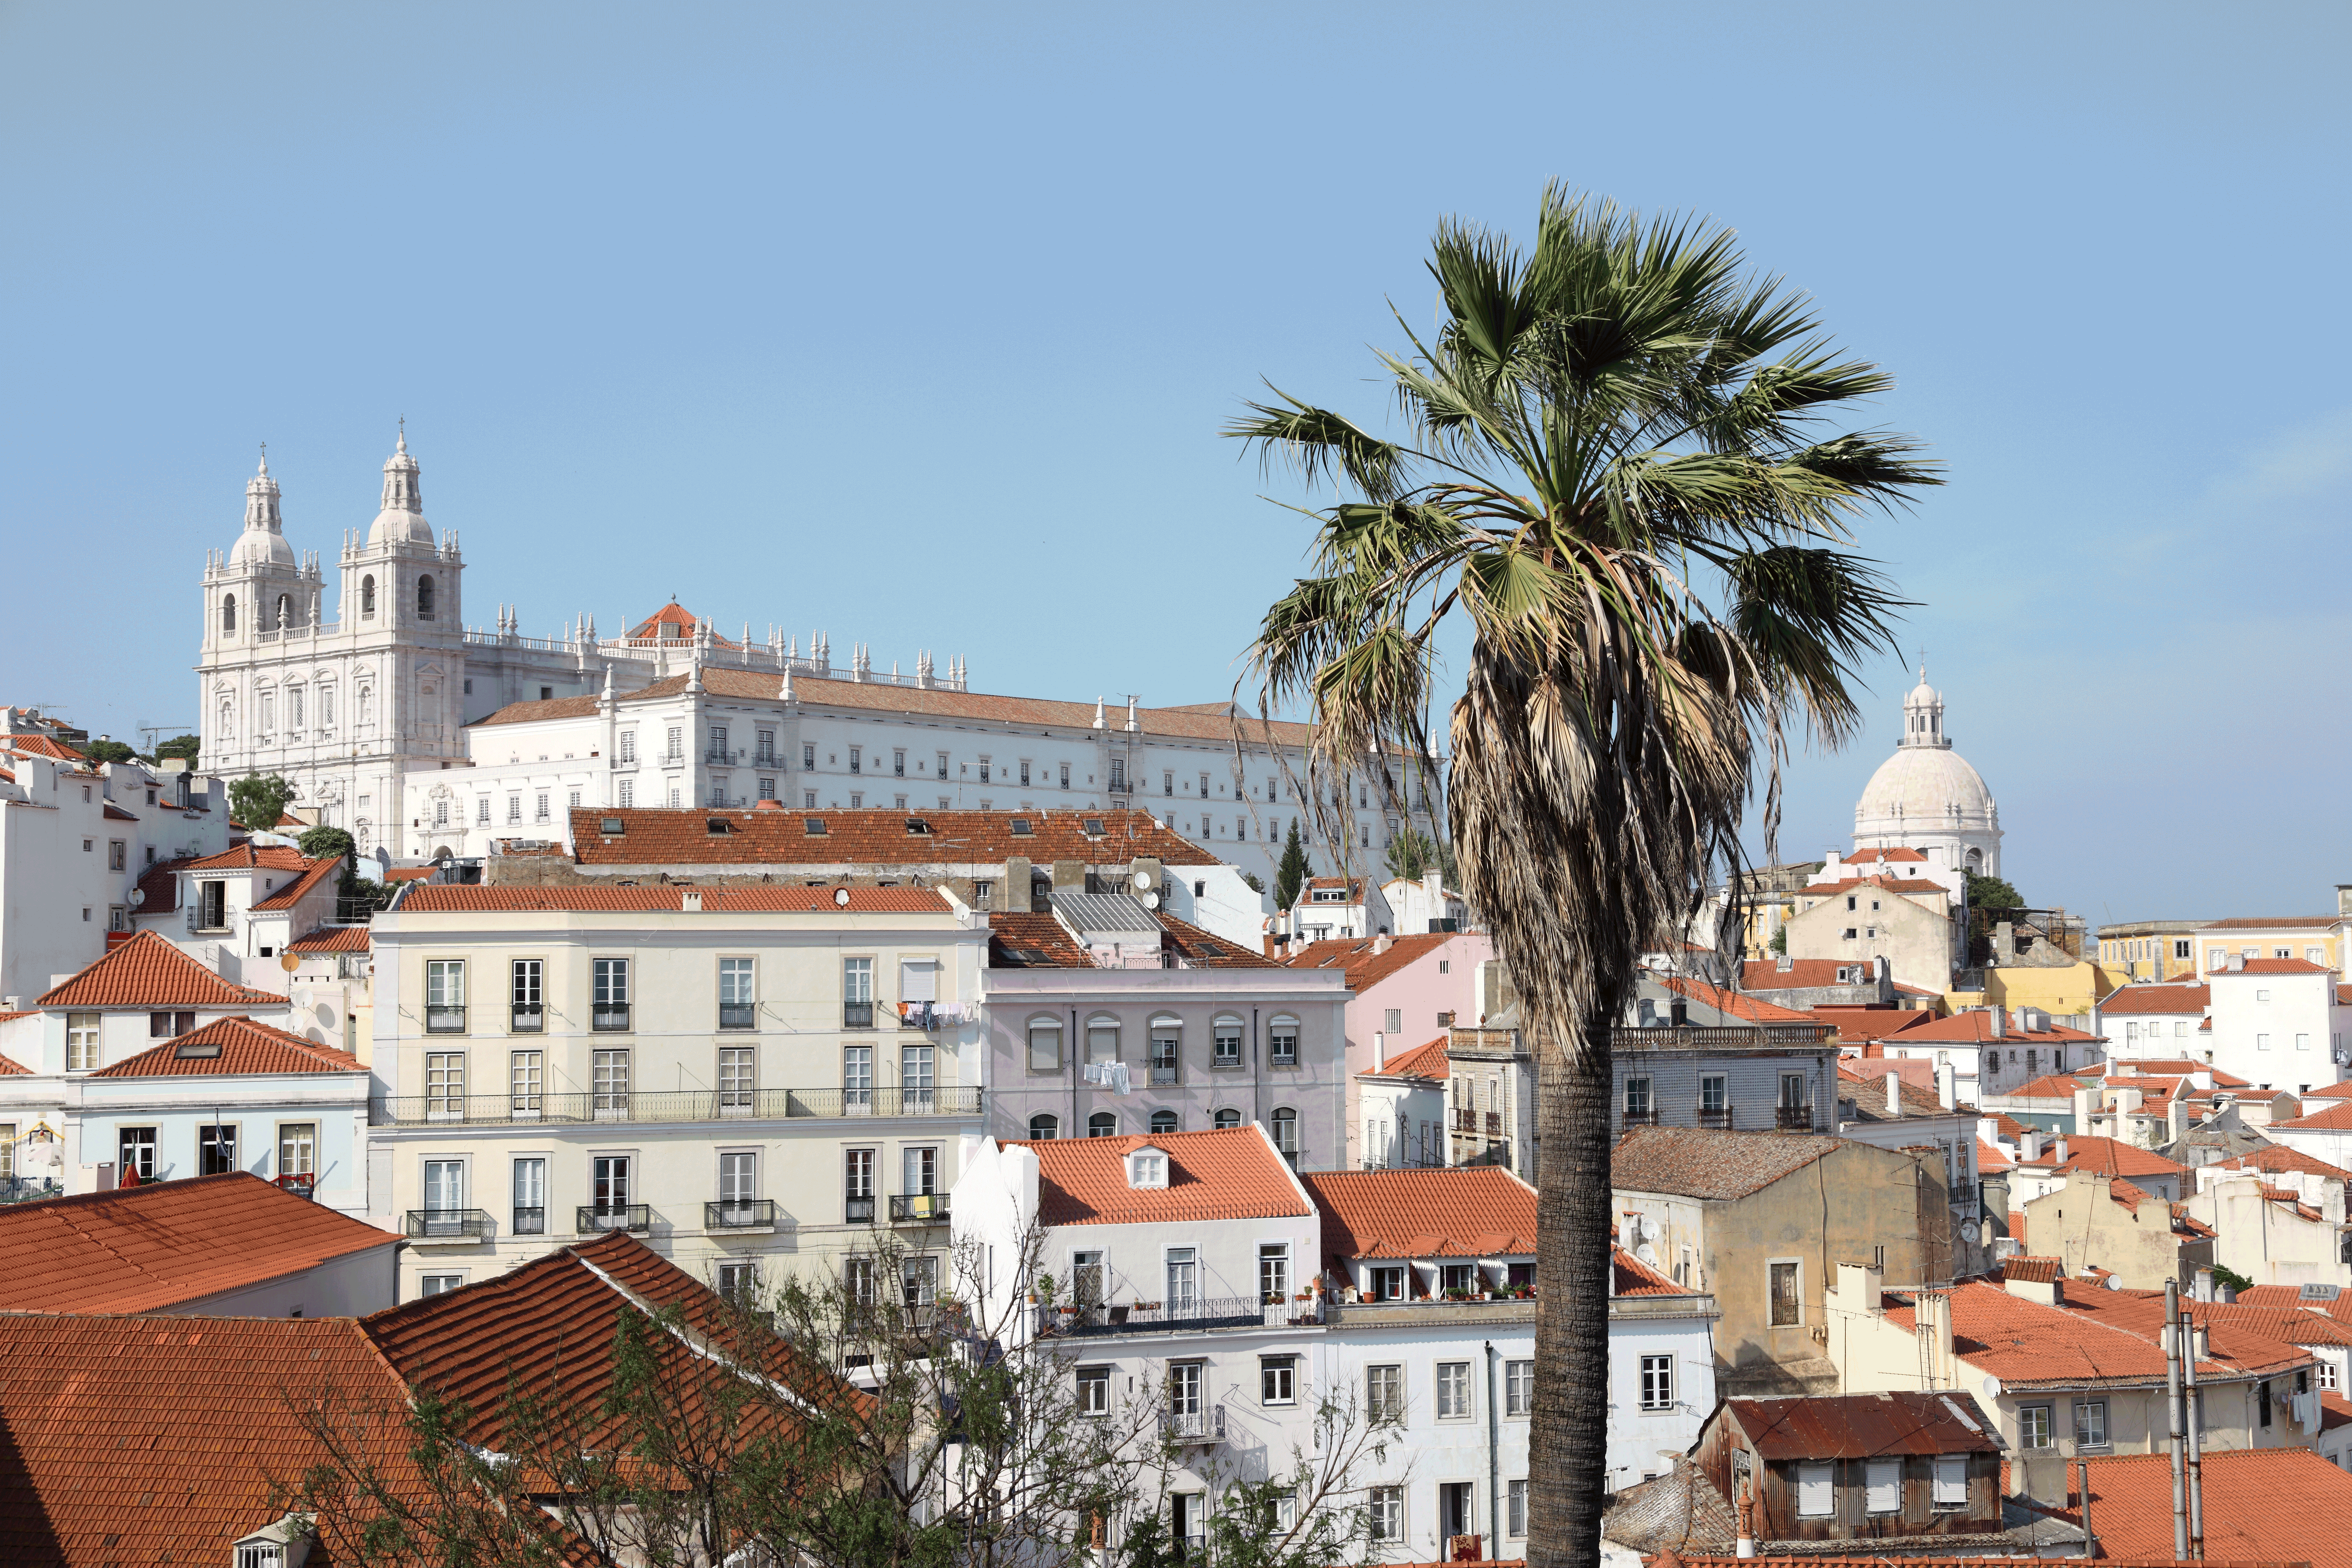 Den gamle bydel i Lissabon, Portugal - Kulturrejser